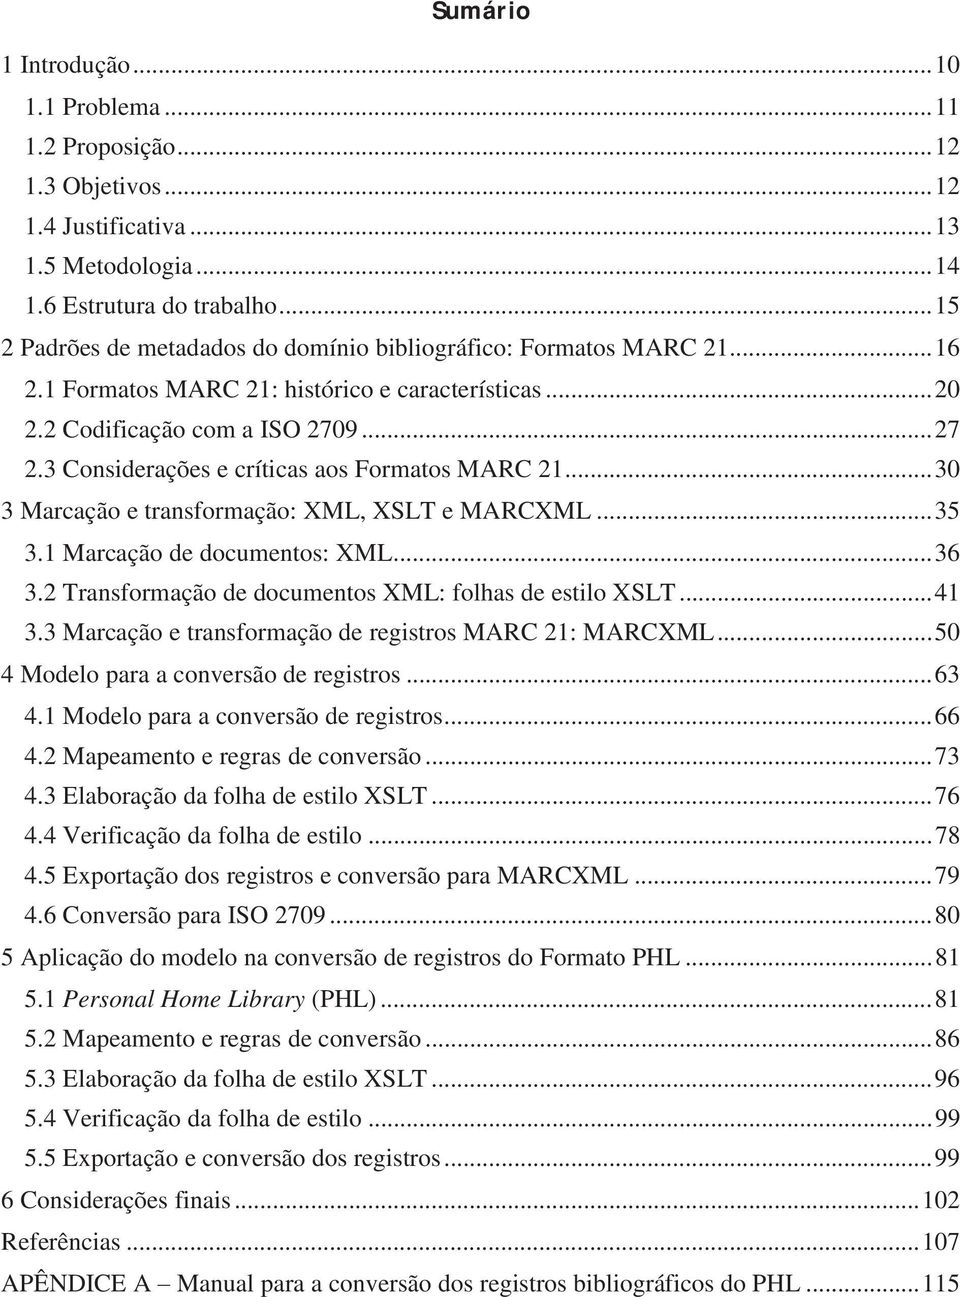 3 Considerações e críticas aos Formatos MARC 21... 30 3 Marcação e transformação: XML, XSLT e MARCXML... 35 3.1 Marcação de documentos: XML... 36 3.